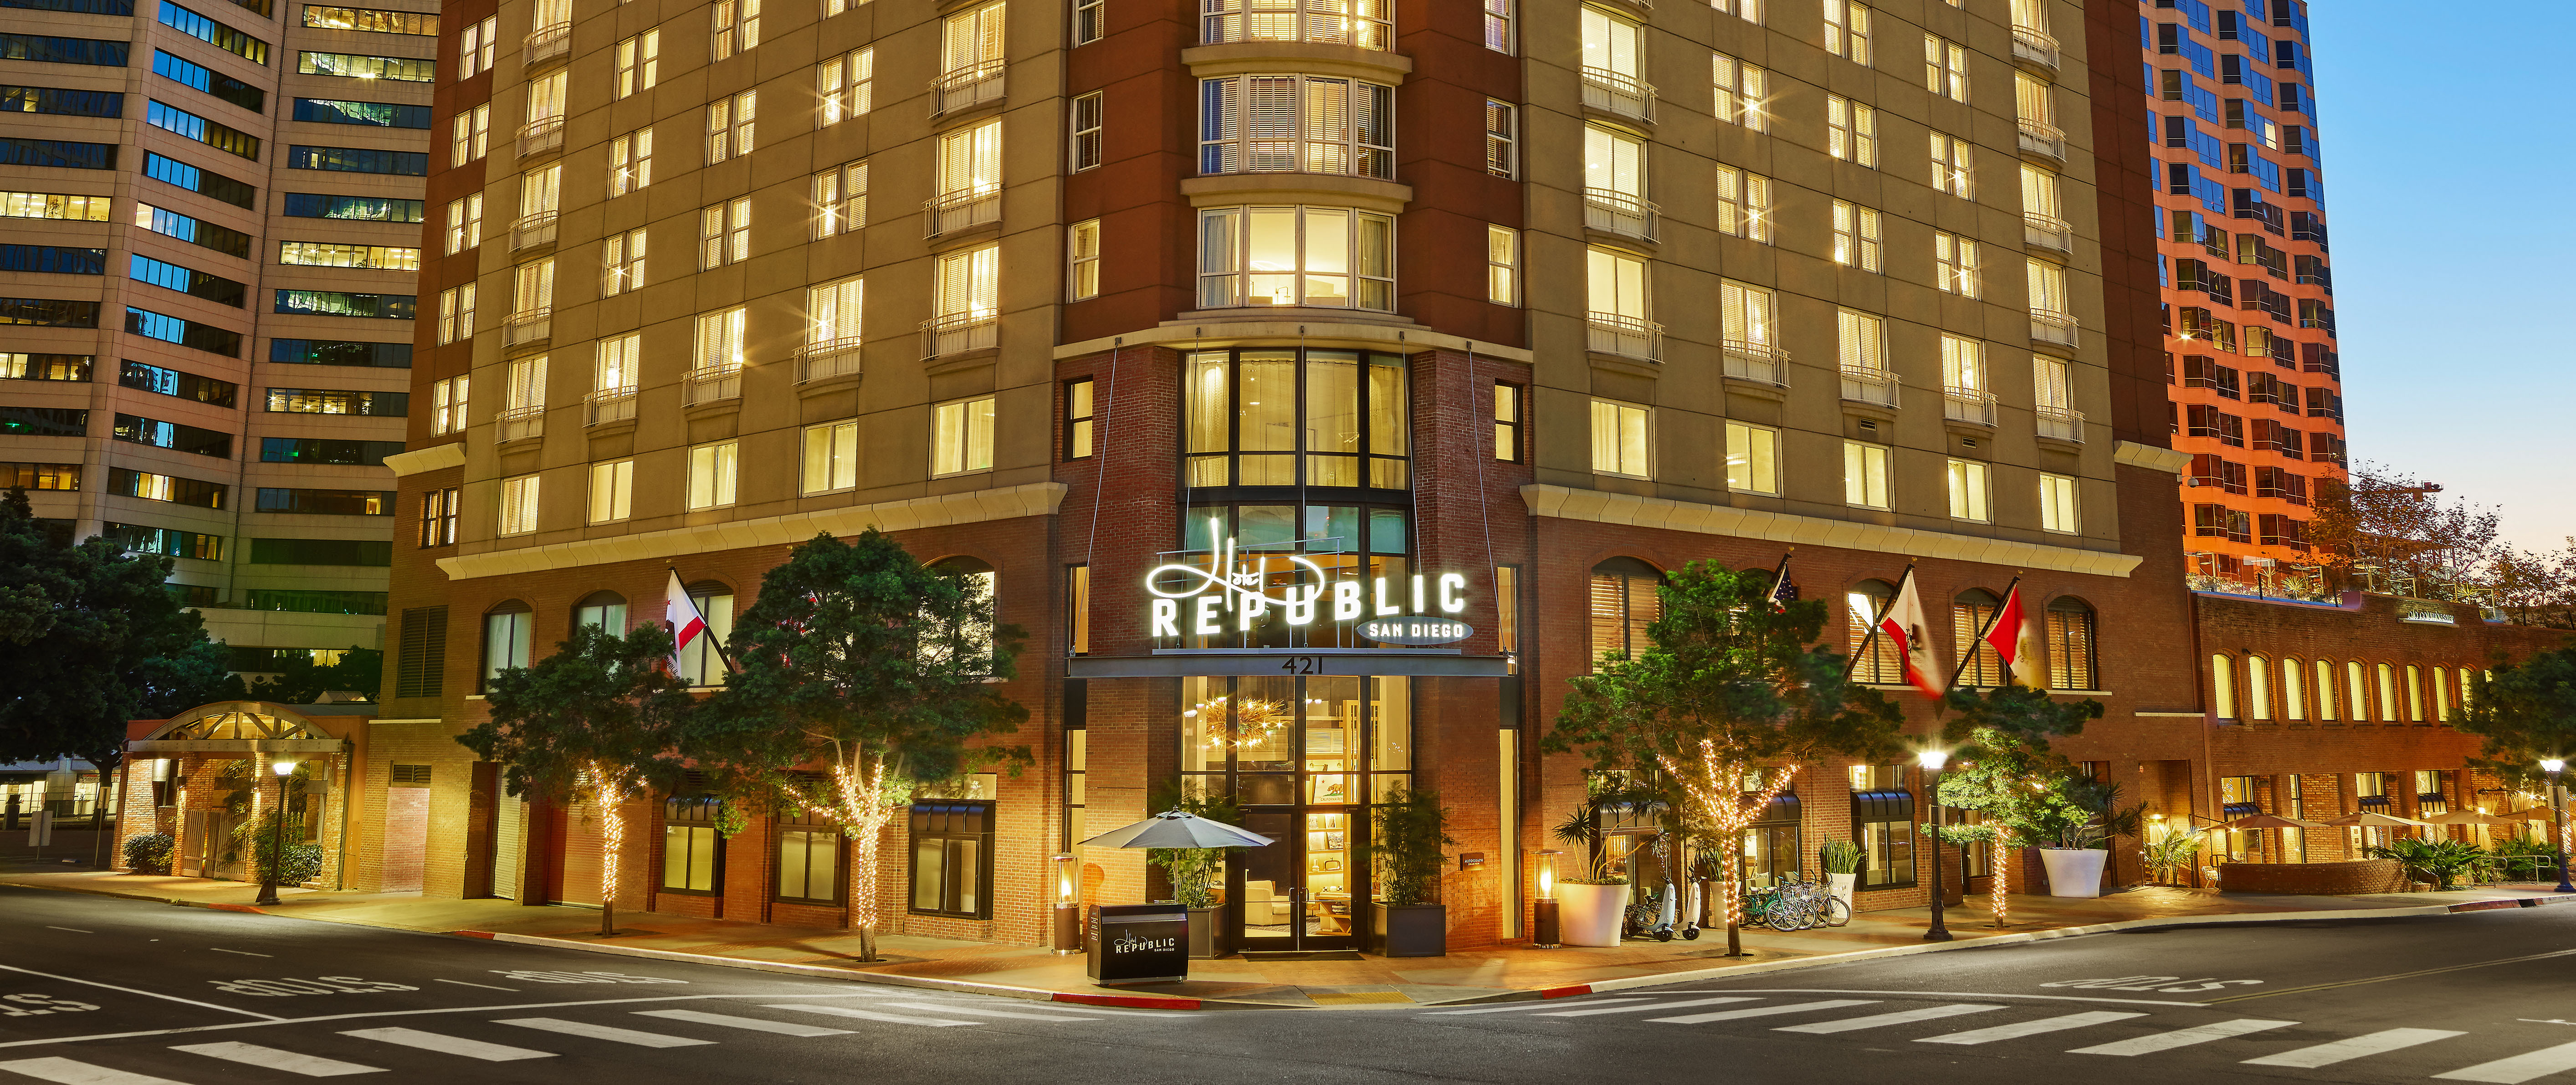 Photo of Hotel Republic San Diego, San Diego, CA